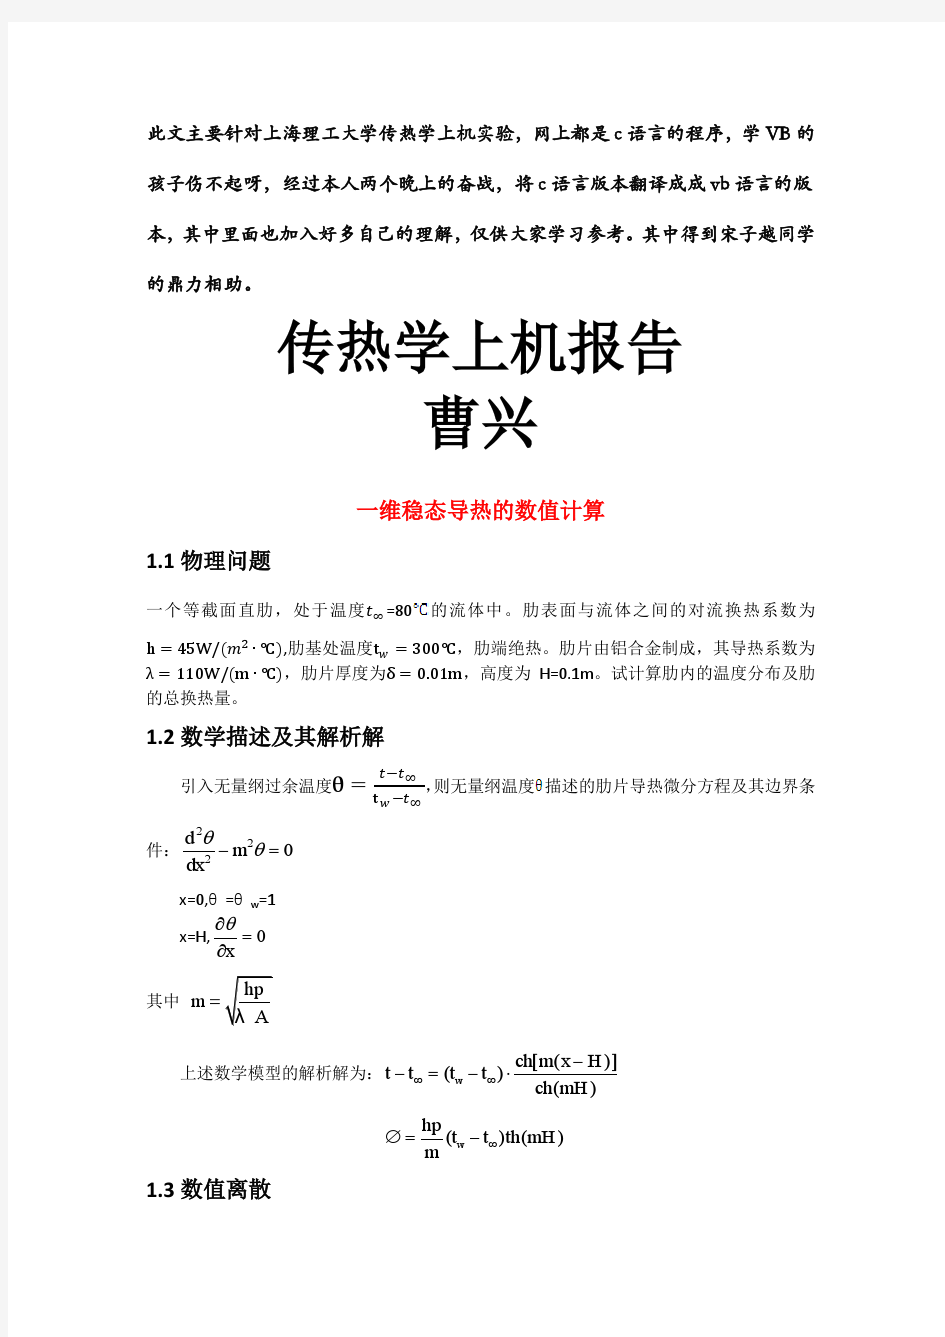 上海理工大学传热学上机实验